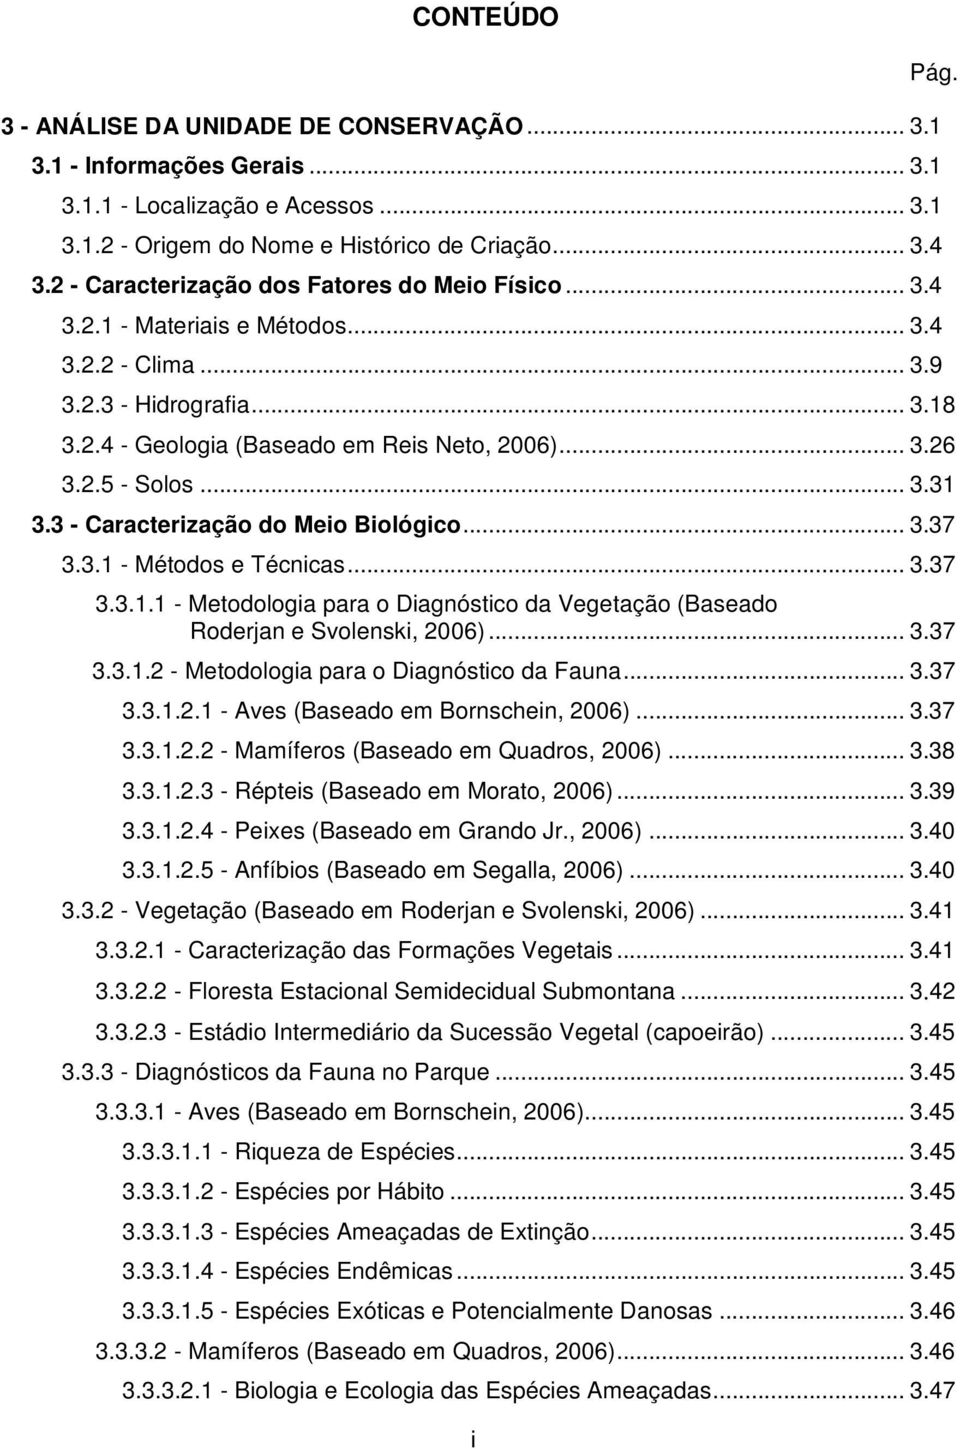 .. 3.31 3.3 - Caracterização do Meio Biológico... 3.37 3.3.1 - Métodos e Técnicas... 3.37 3.3.1.1 - Metodologia para o Diagnóstico da Vegetação (Baseado Roderjan e Svolenski, 2006)... 3.37 3.3.1.2 - Metodologia para o Diagnóstico da Fauna.